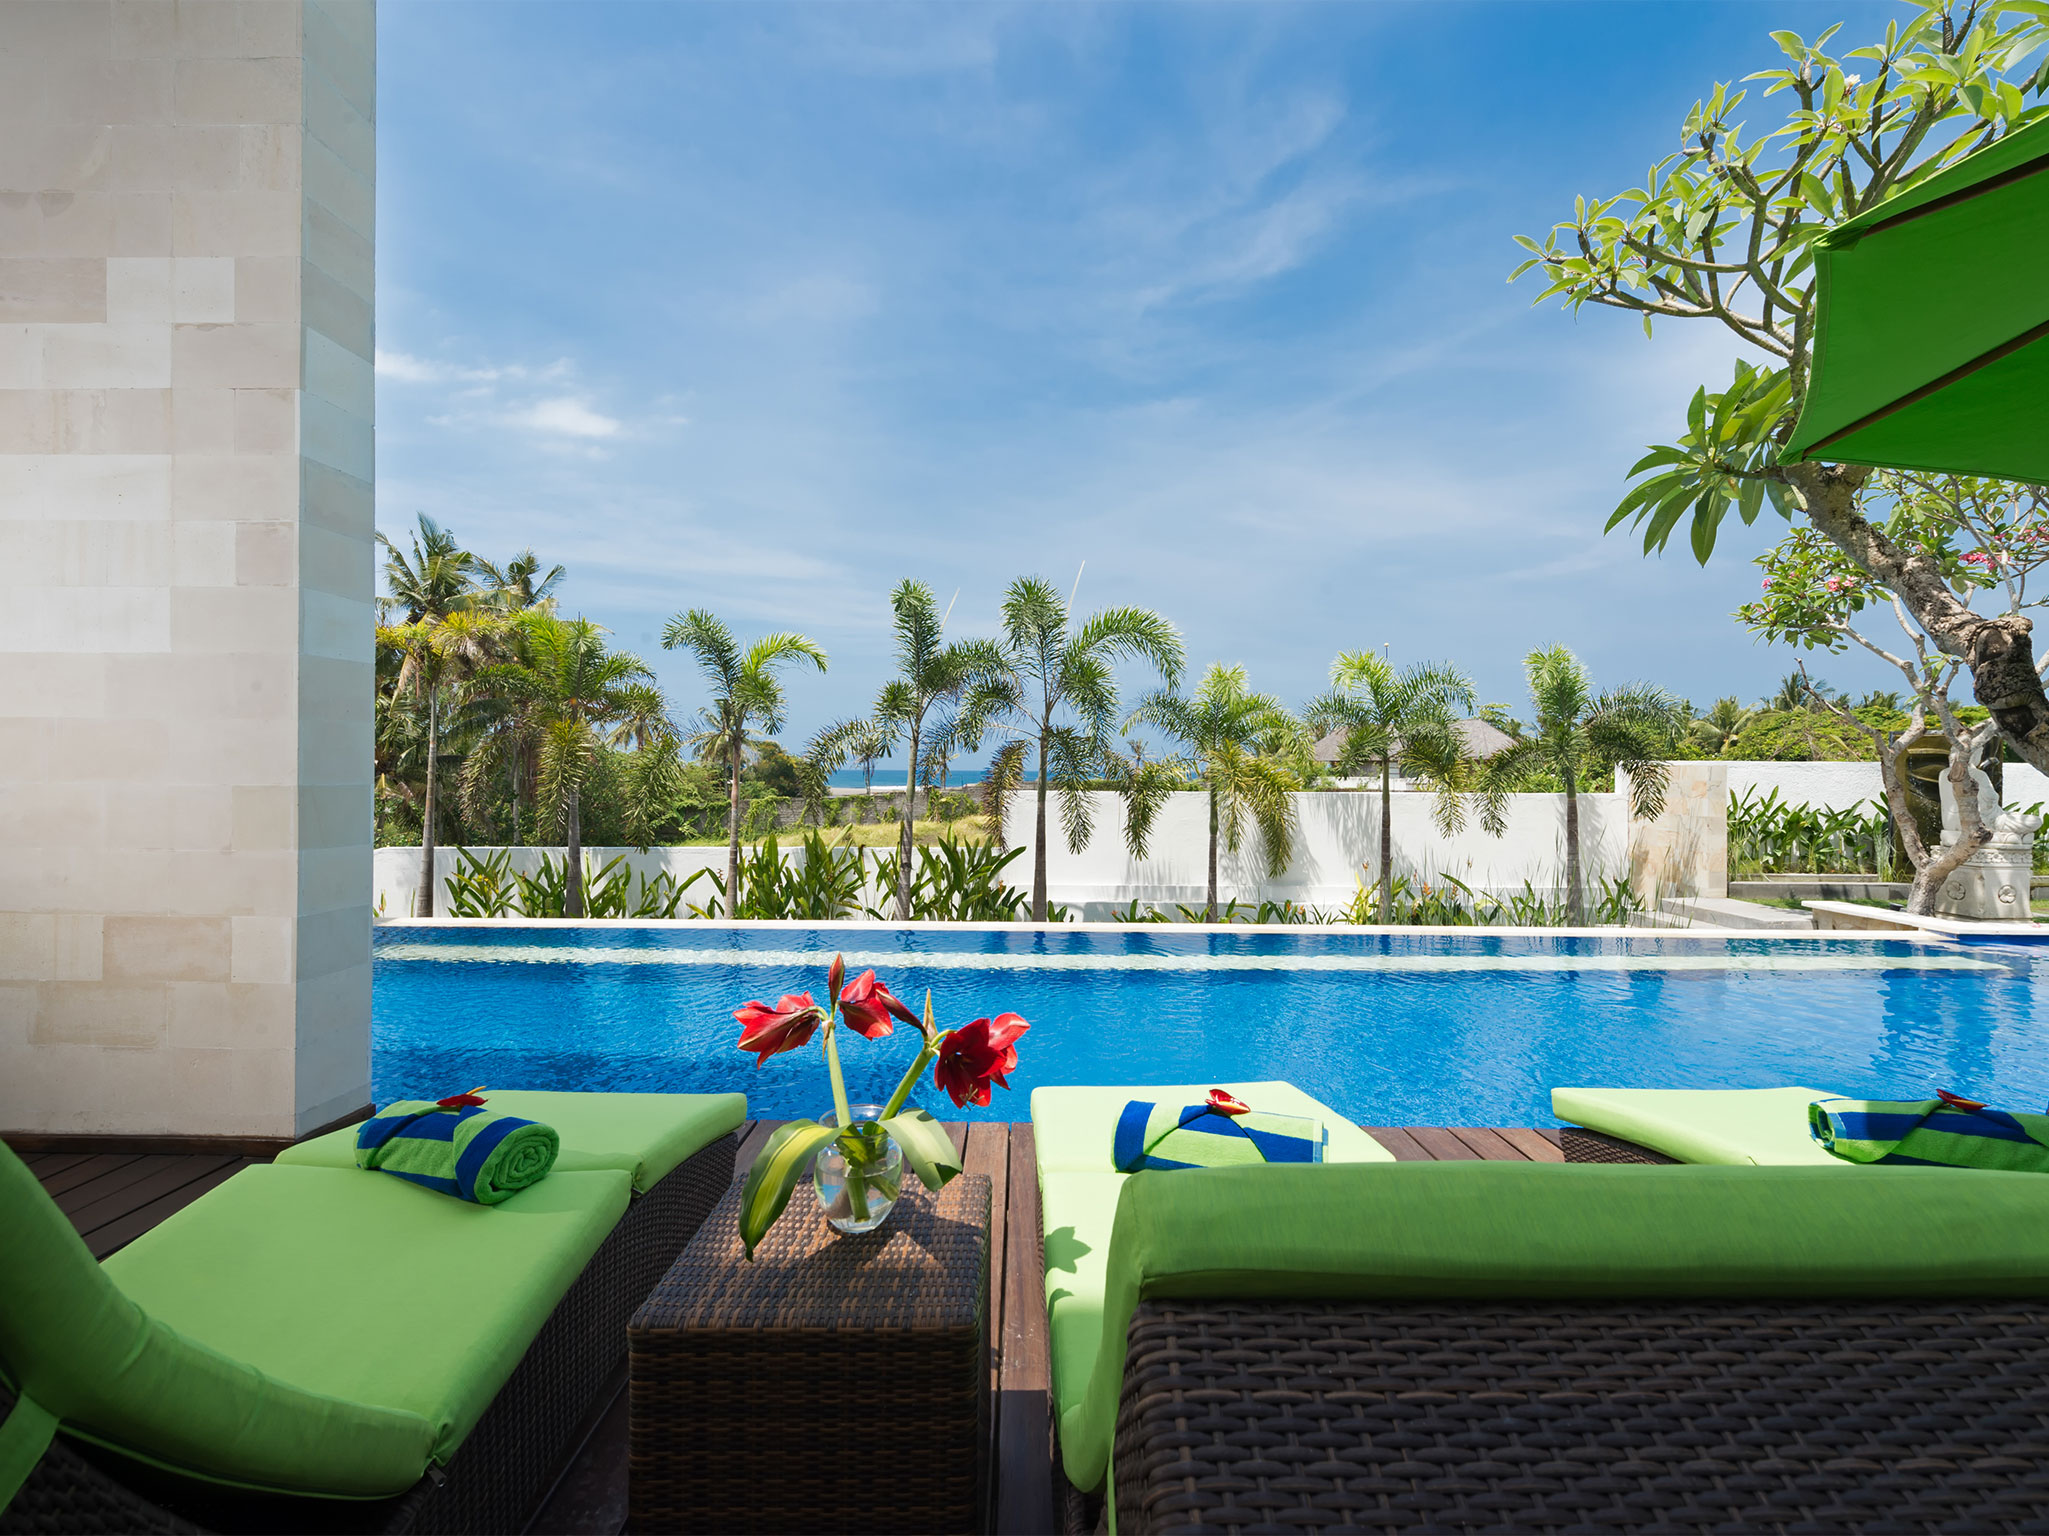 Villa Luwih - Pool view - Villa Luwih, Canggu, Bali